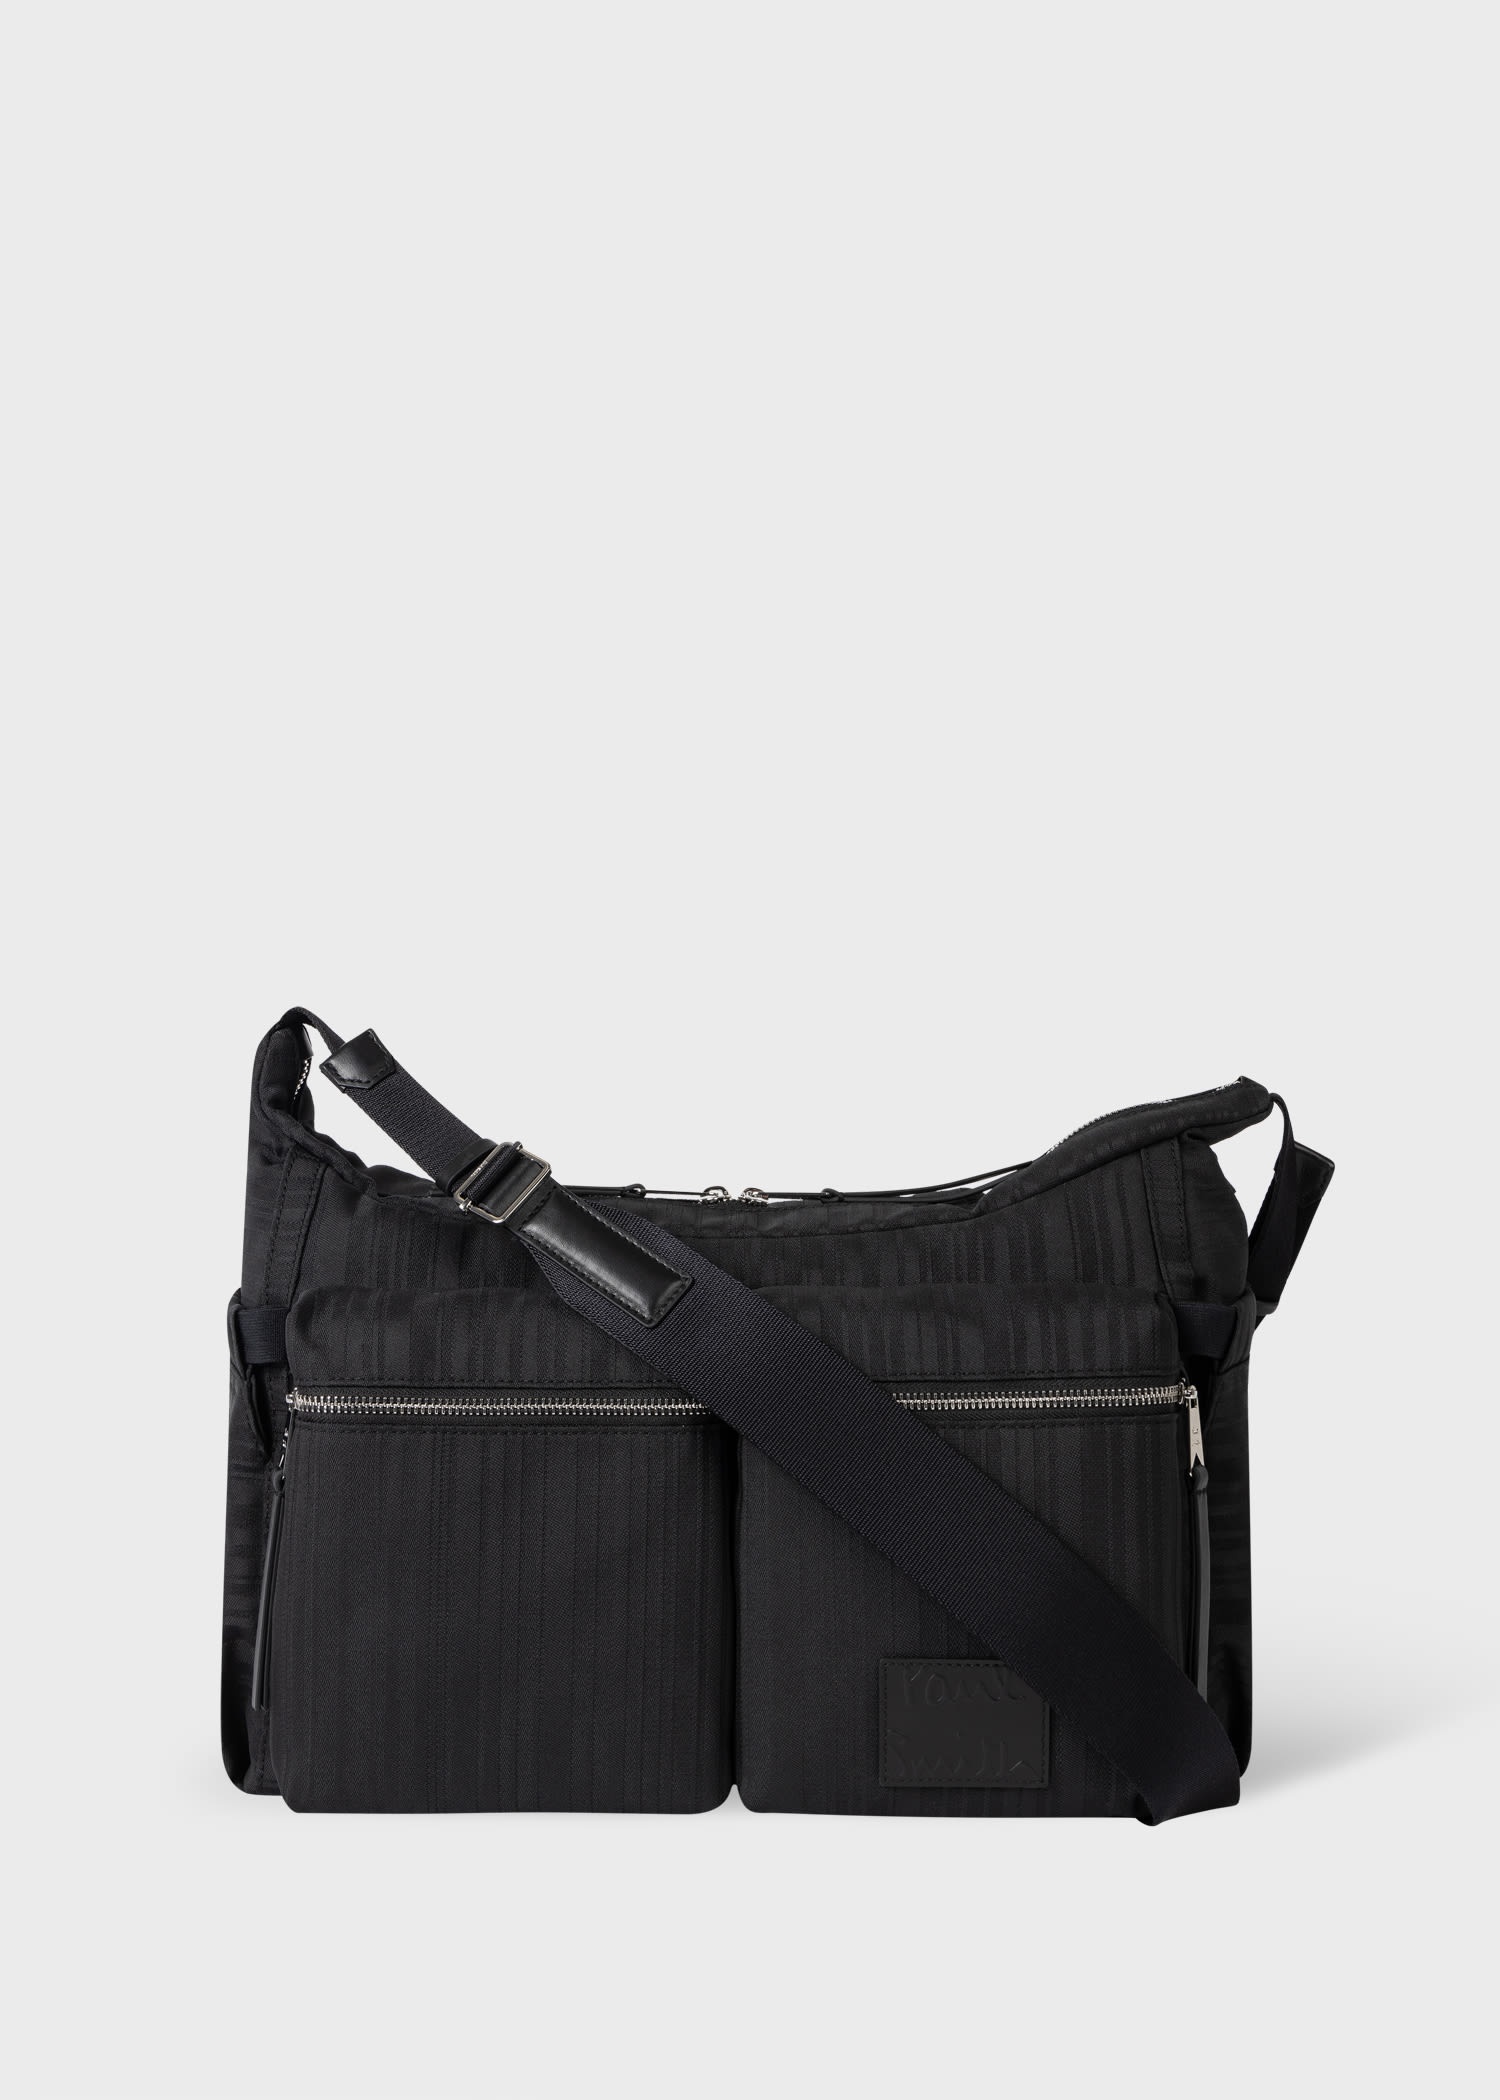 Paul Smith Black Leather Waist Bag